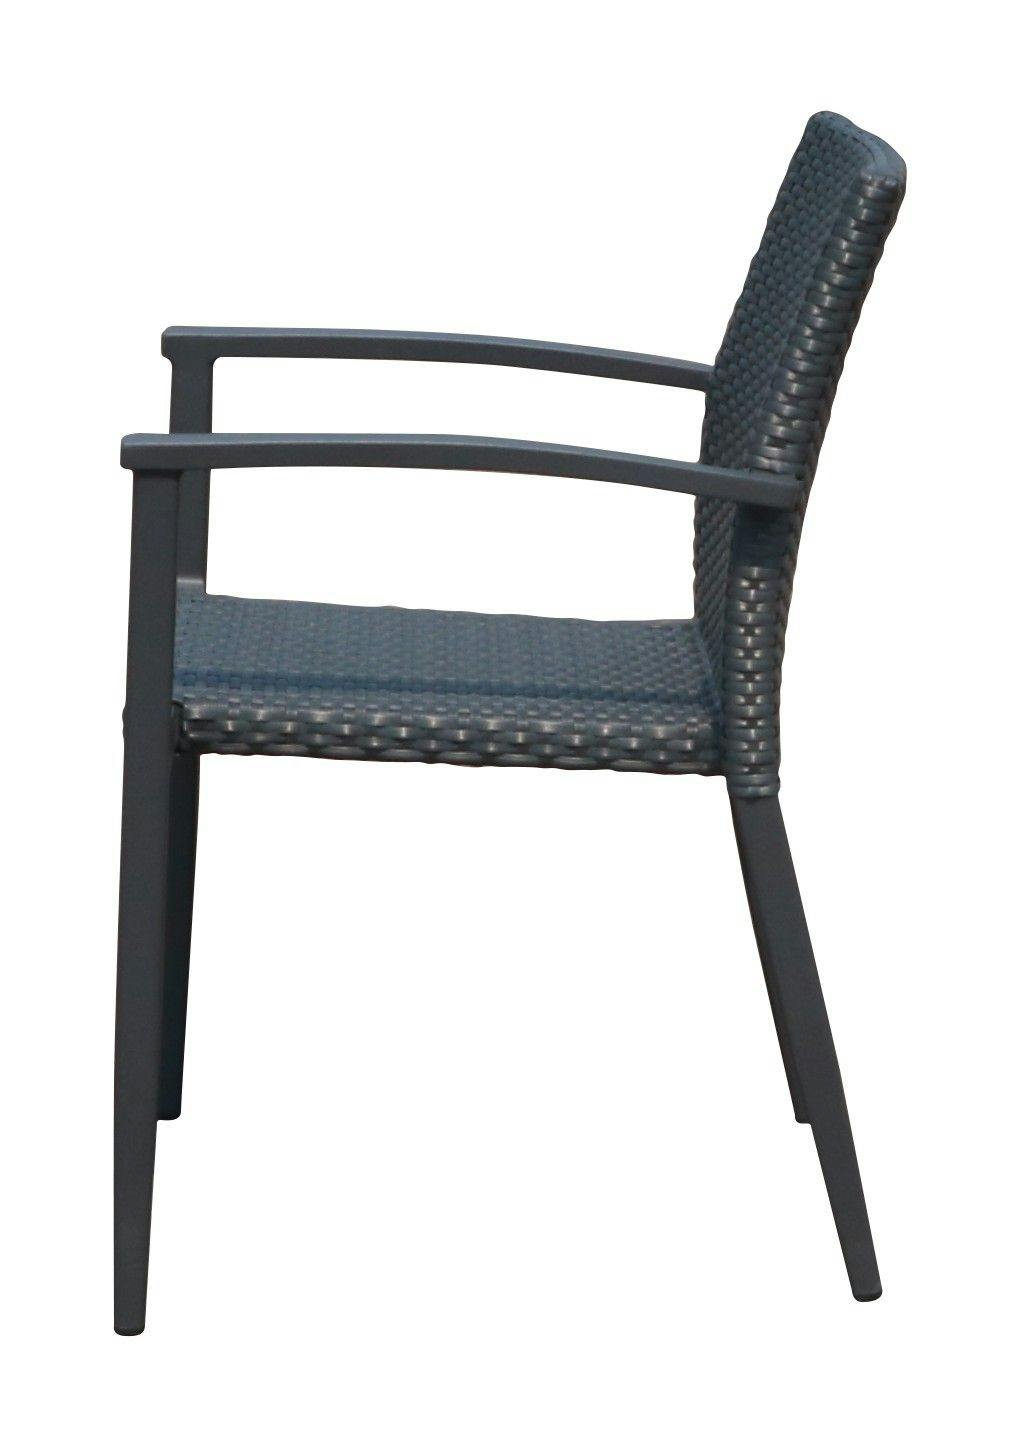 Eindig Afwijzen een vuurtje stoken METRO Professional terrasstoel, aluminium/PE-rotan, 56 x 58,5 x 82 cm,  stapelbaar, zwart/ grijs | MAKRO Webshop